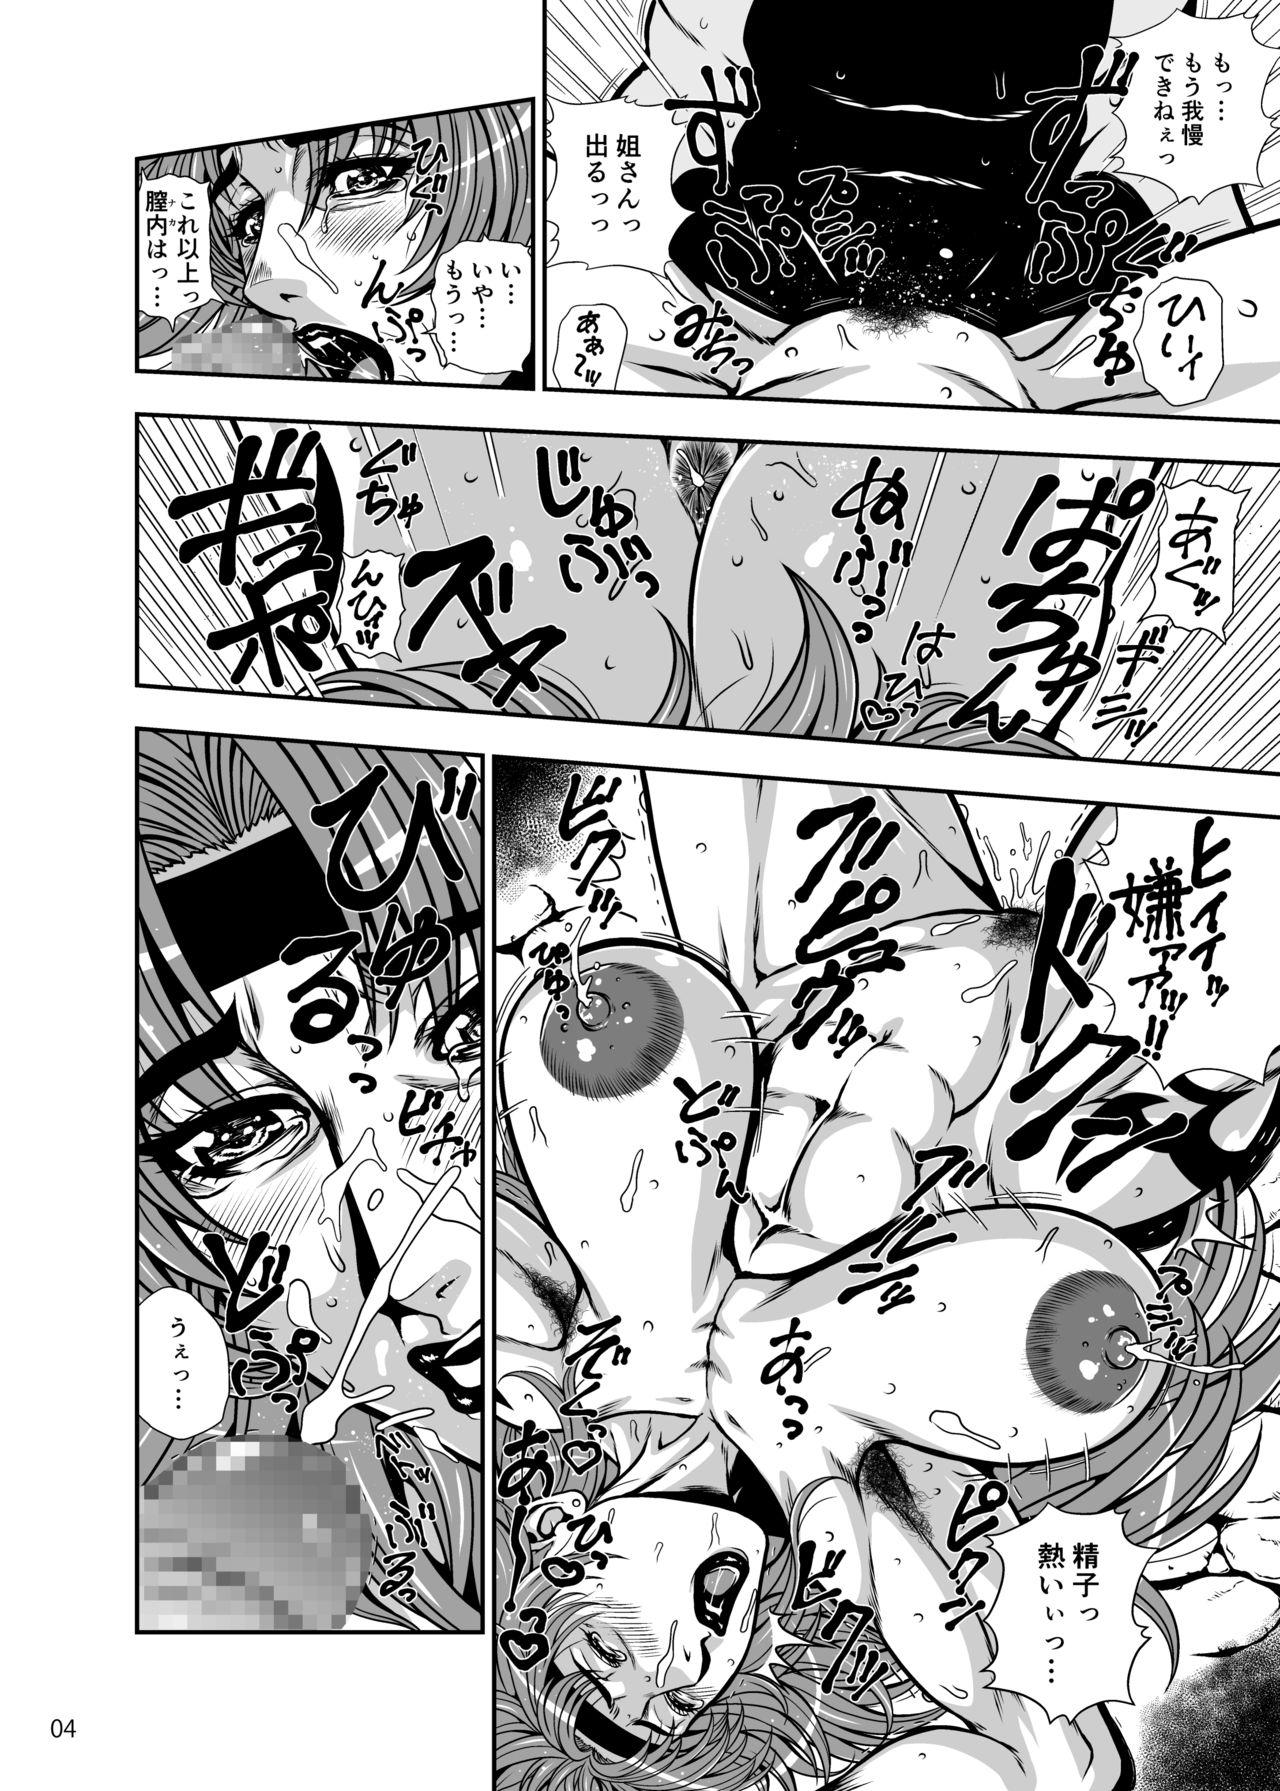 Culonas Toride no Nikubenki Hajisarashi no Makeinu Onna Gizoku - Queens blade Gaycum - Page 3